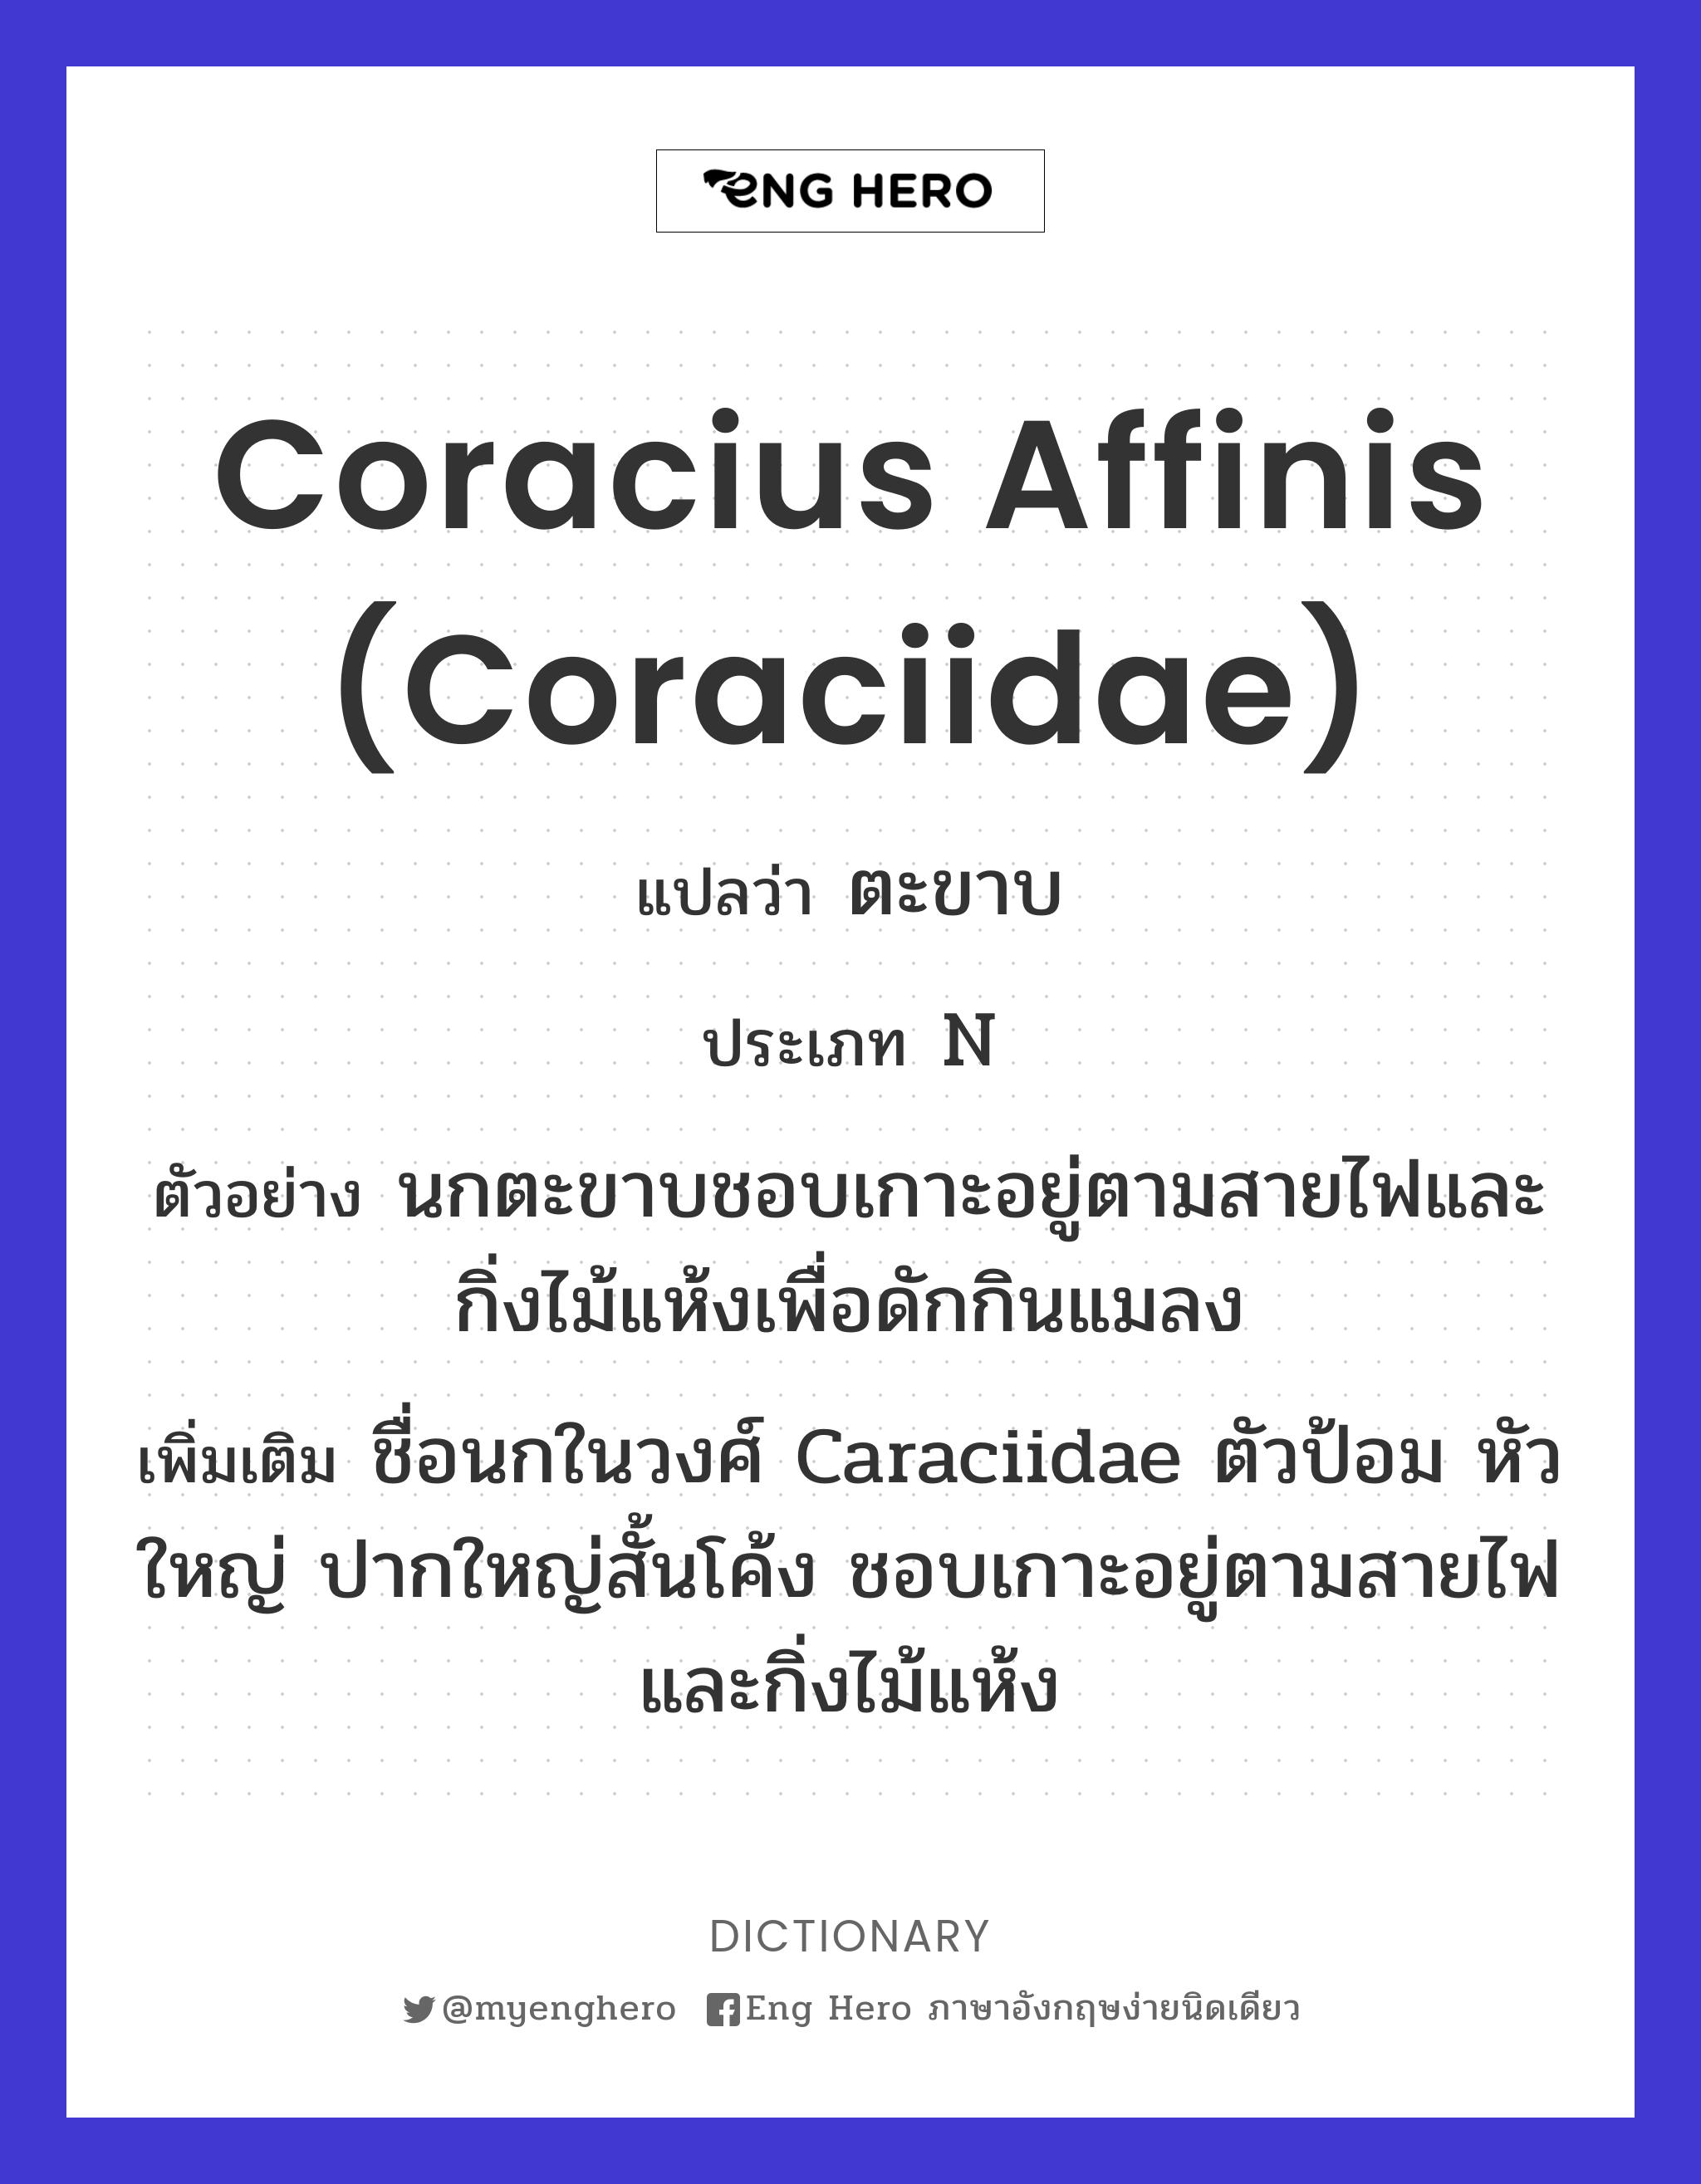 Coracius affinis (Coraciidae)